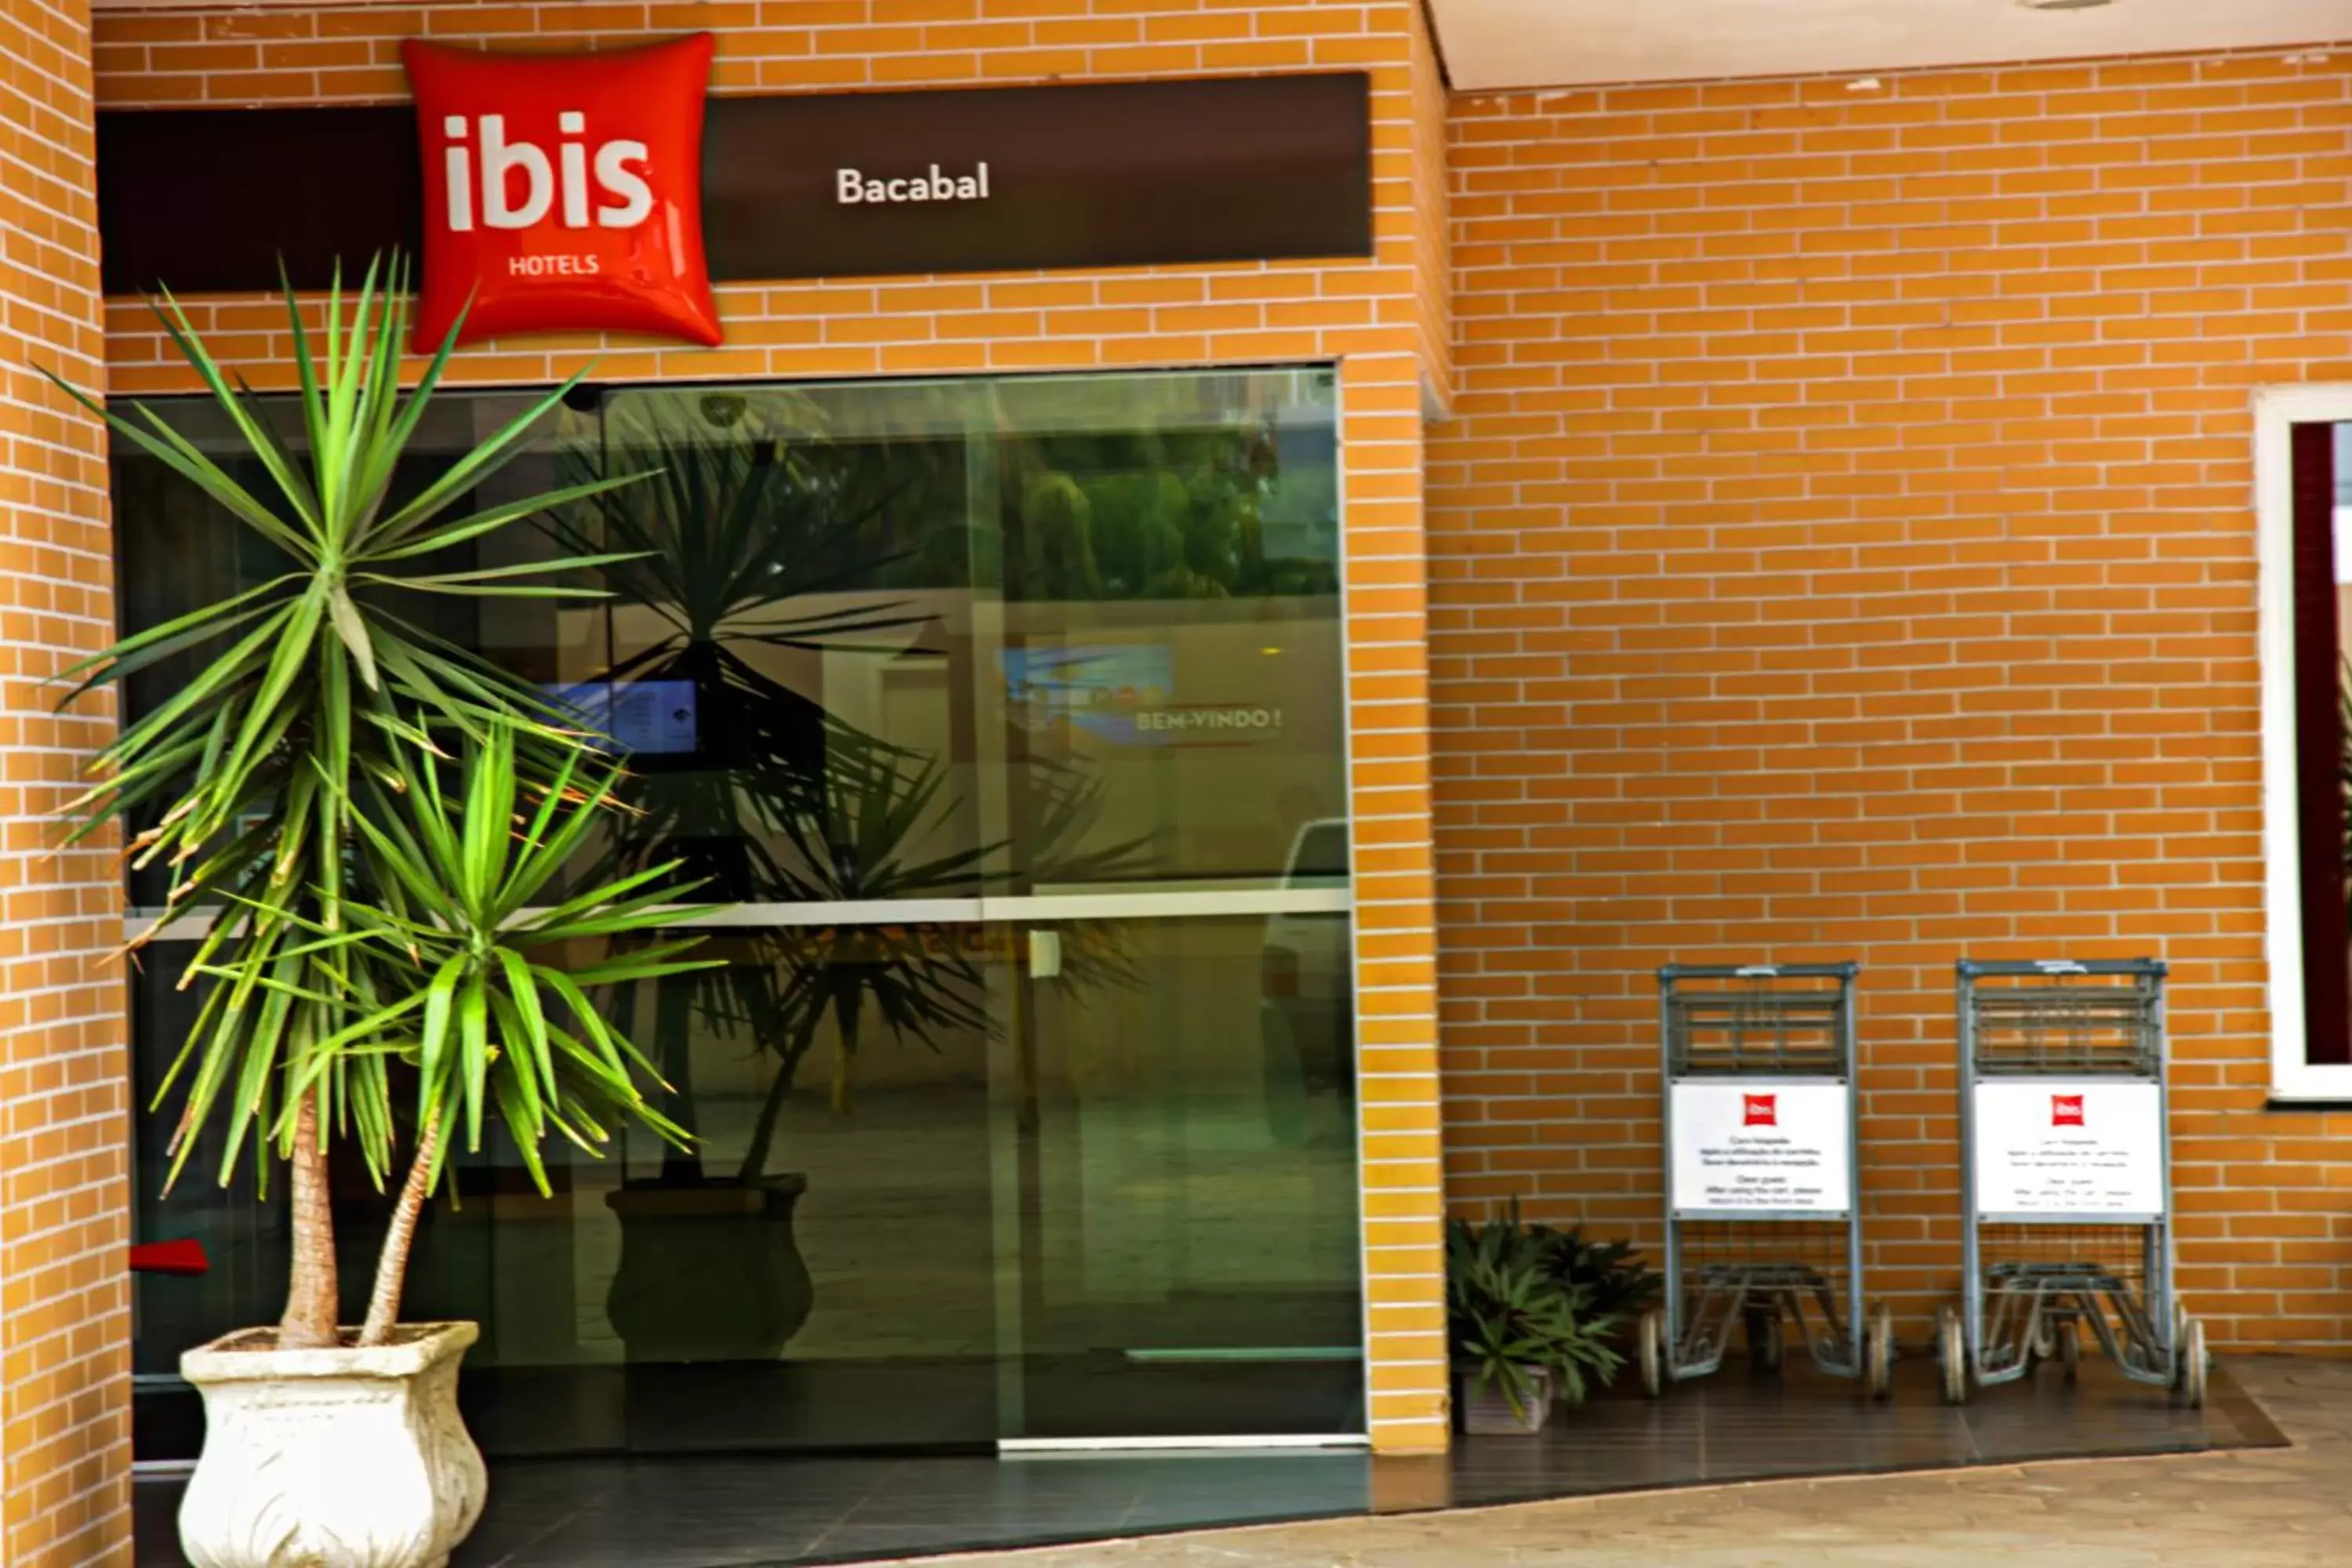 Facade/entrance in ibis Bacabal